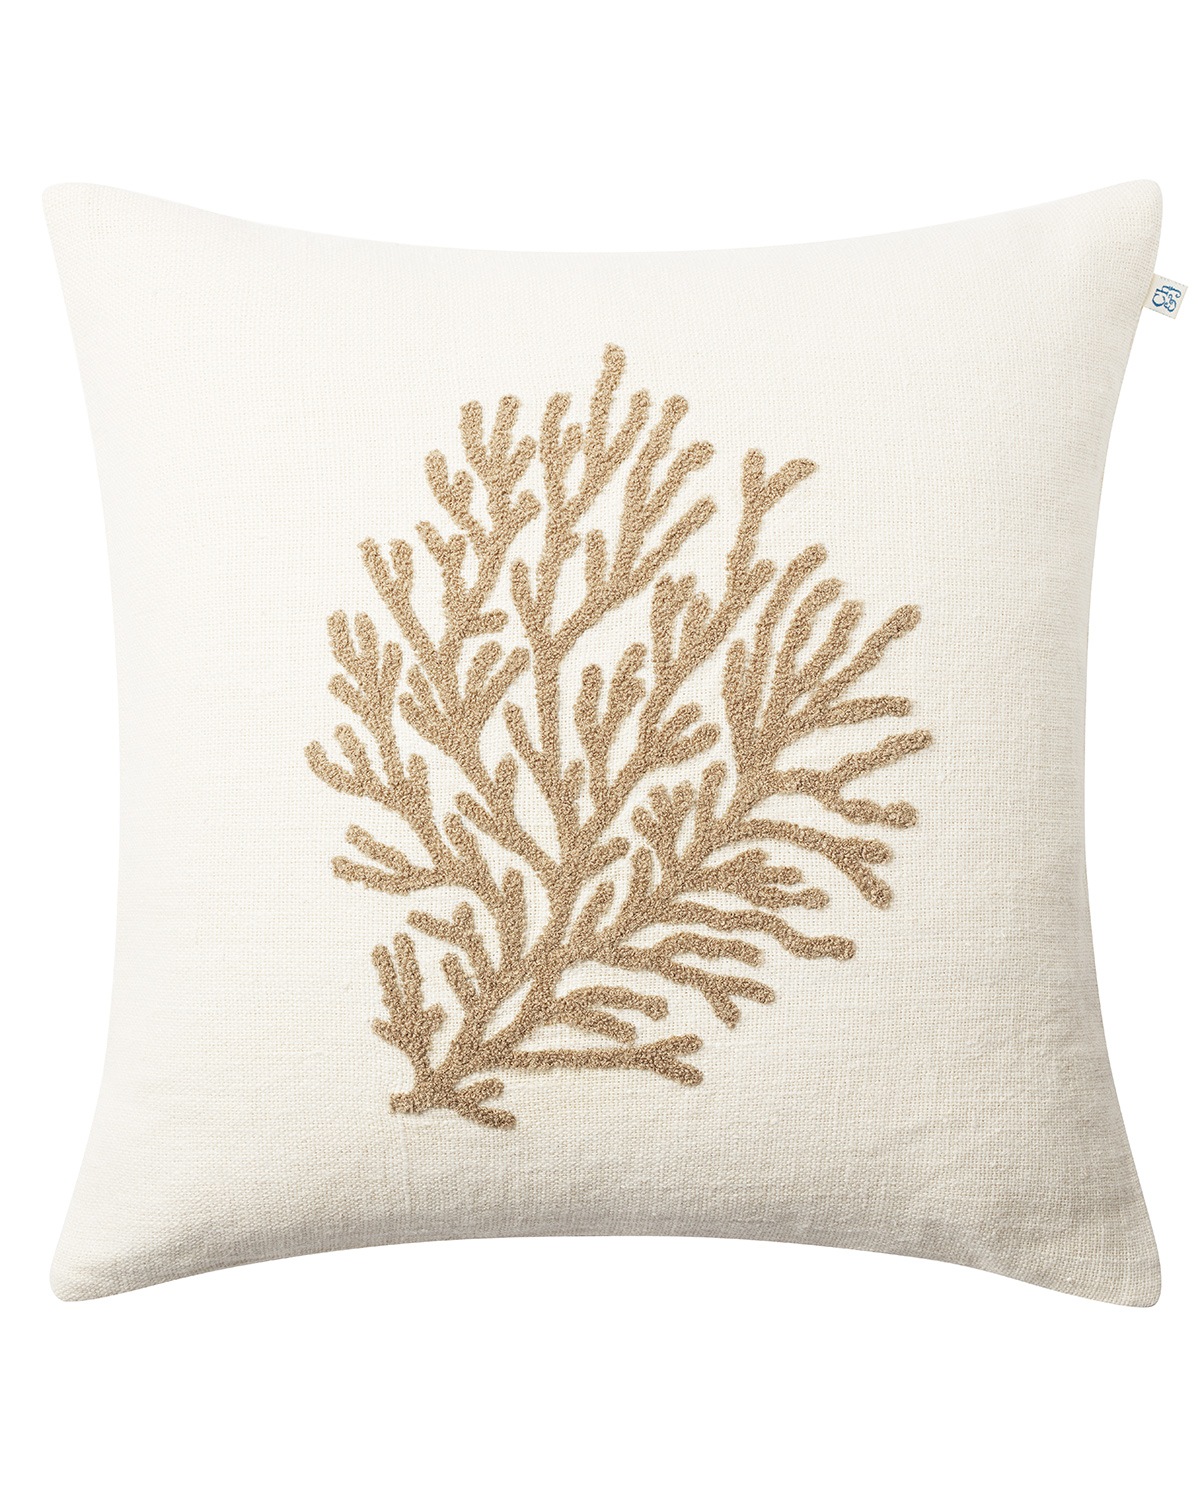 Coral Cushion Cover 50x50 cm, Off-white/Khaki